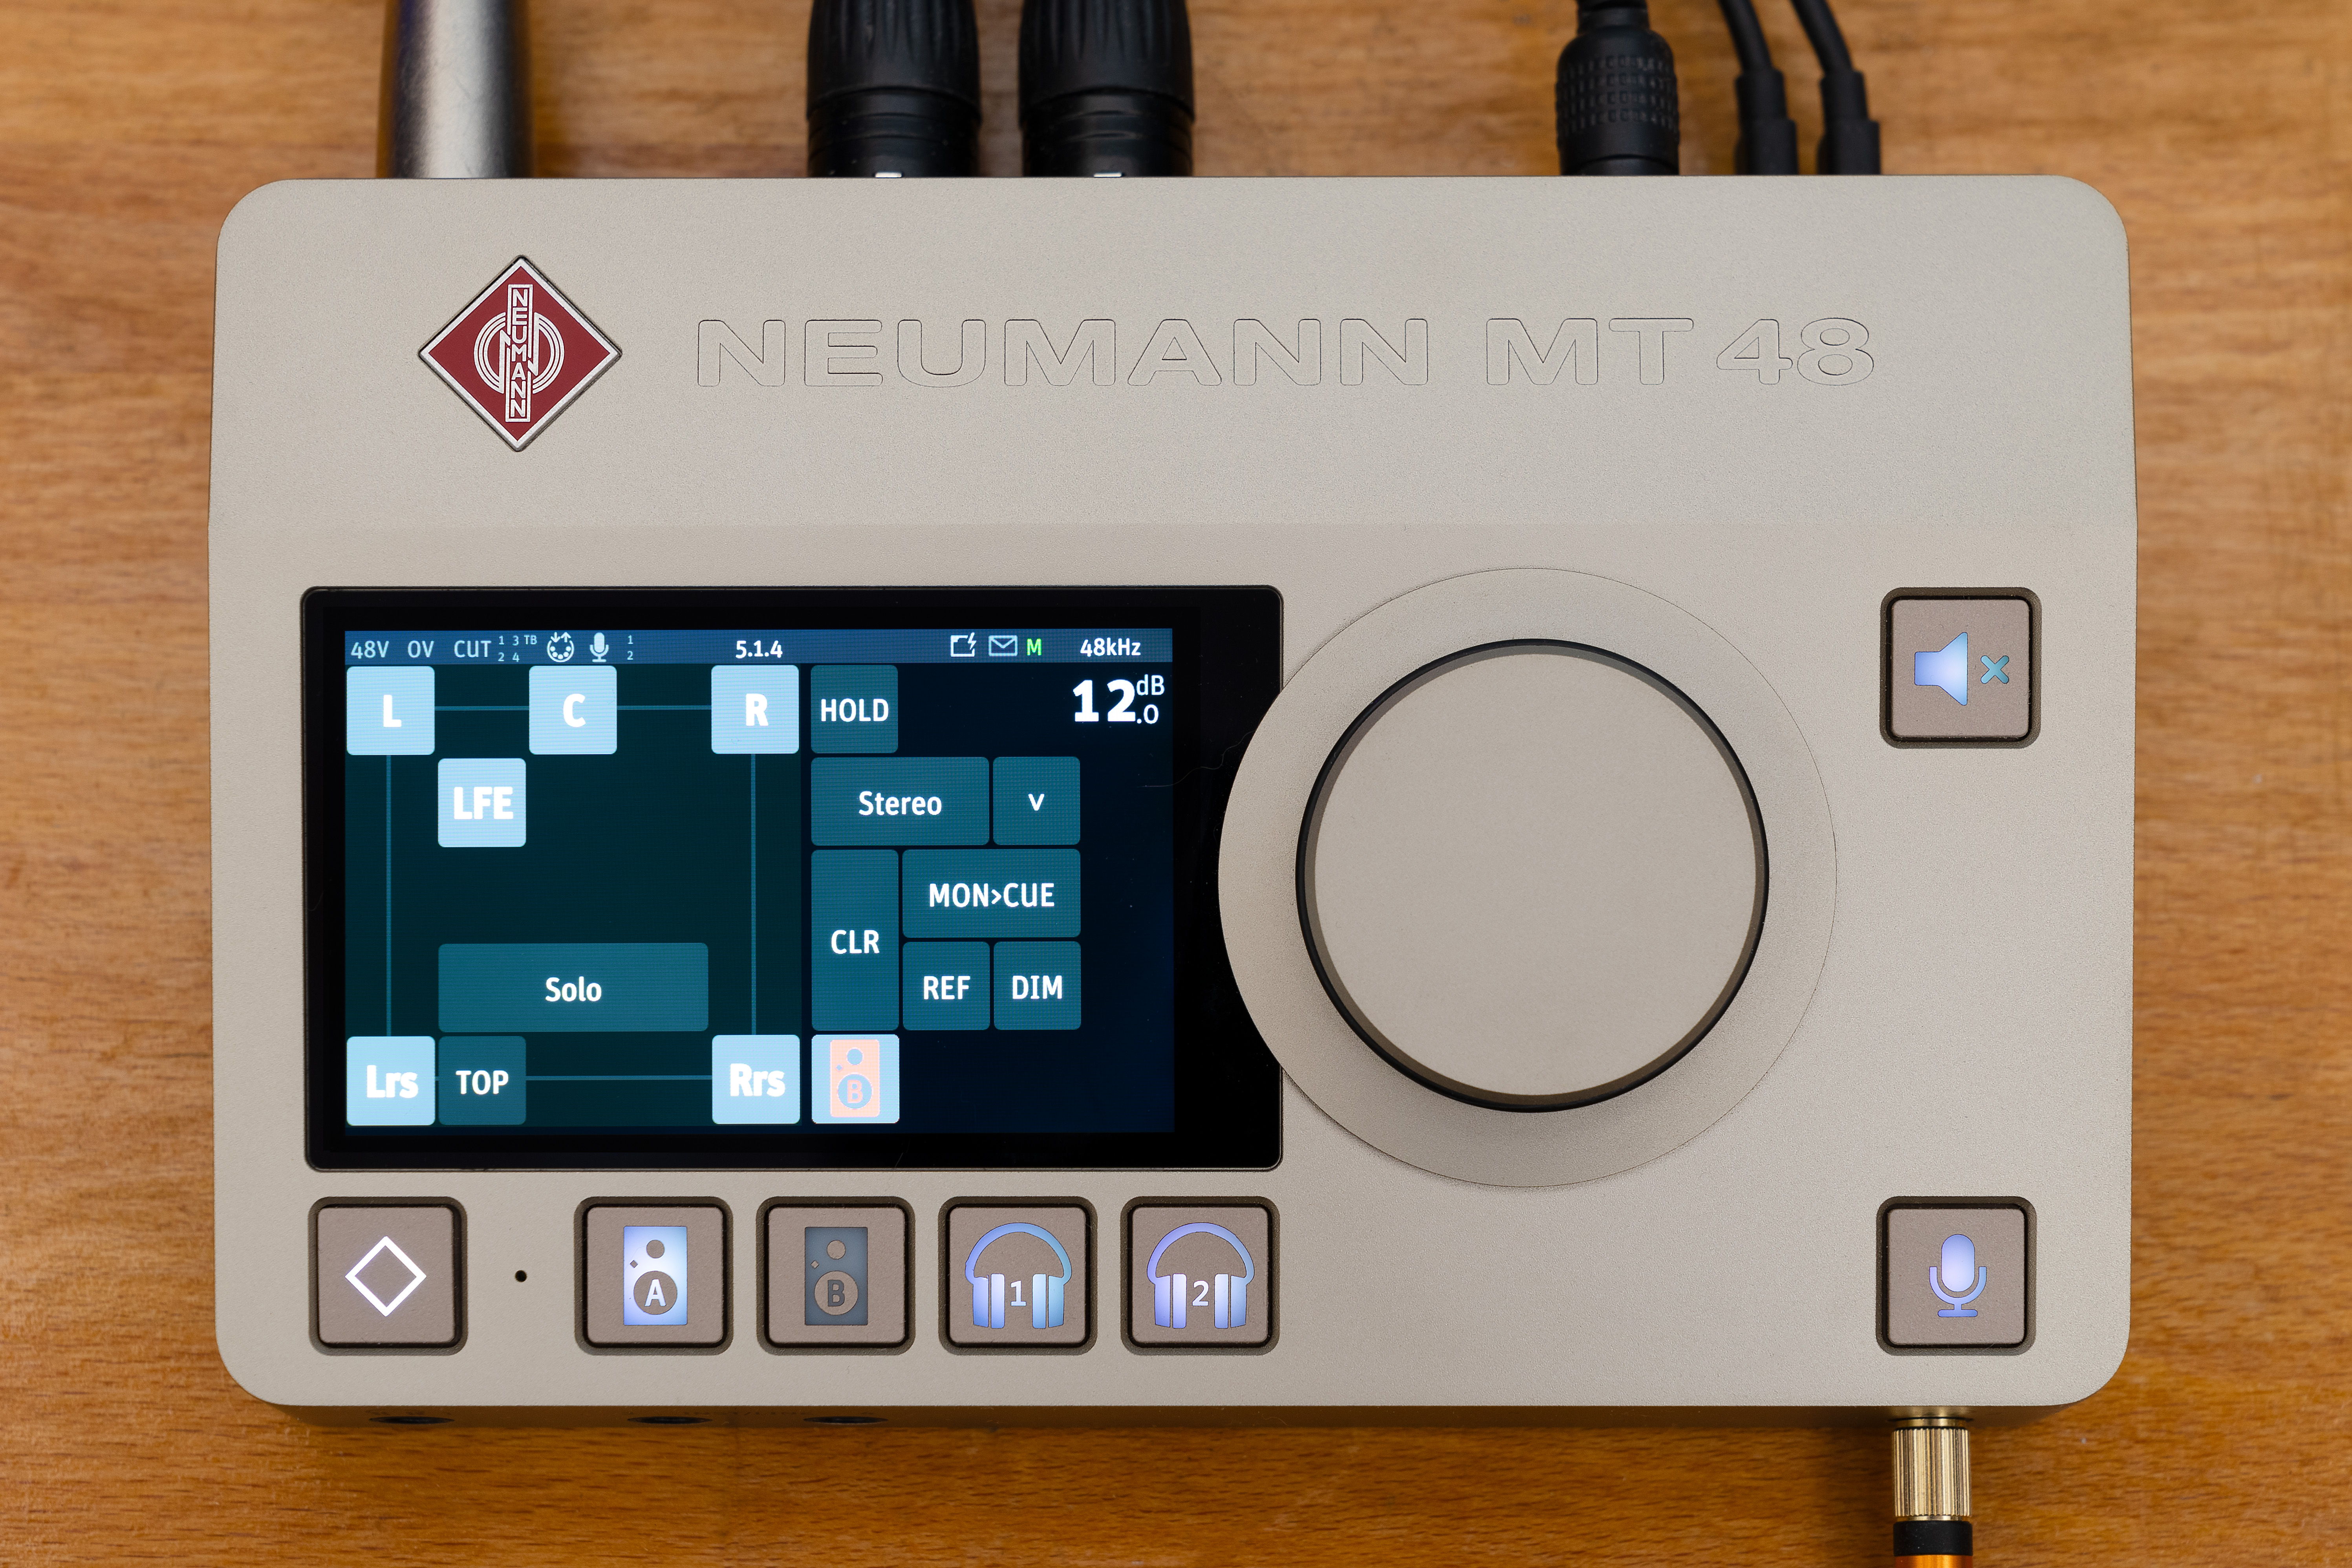 L’interface audio Neumann MT 48 s’enrichit de fonctionnalités très attendues, notamment pour les formats audio immersifs